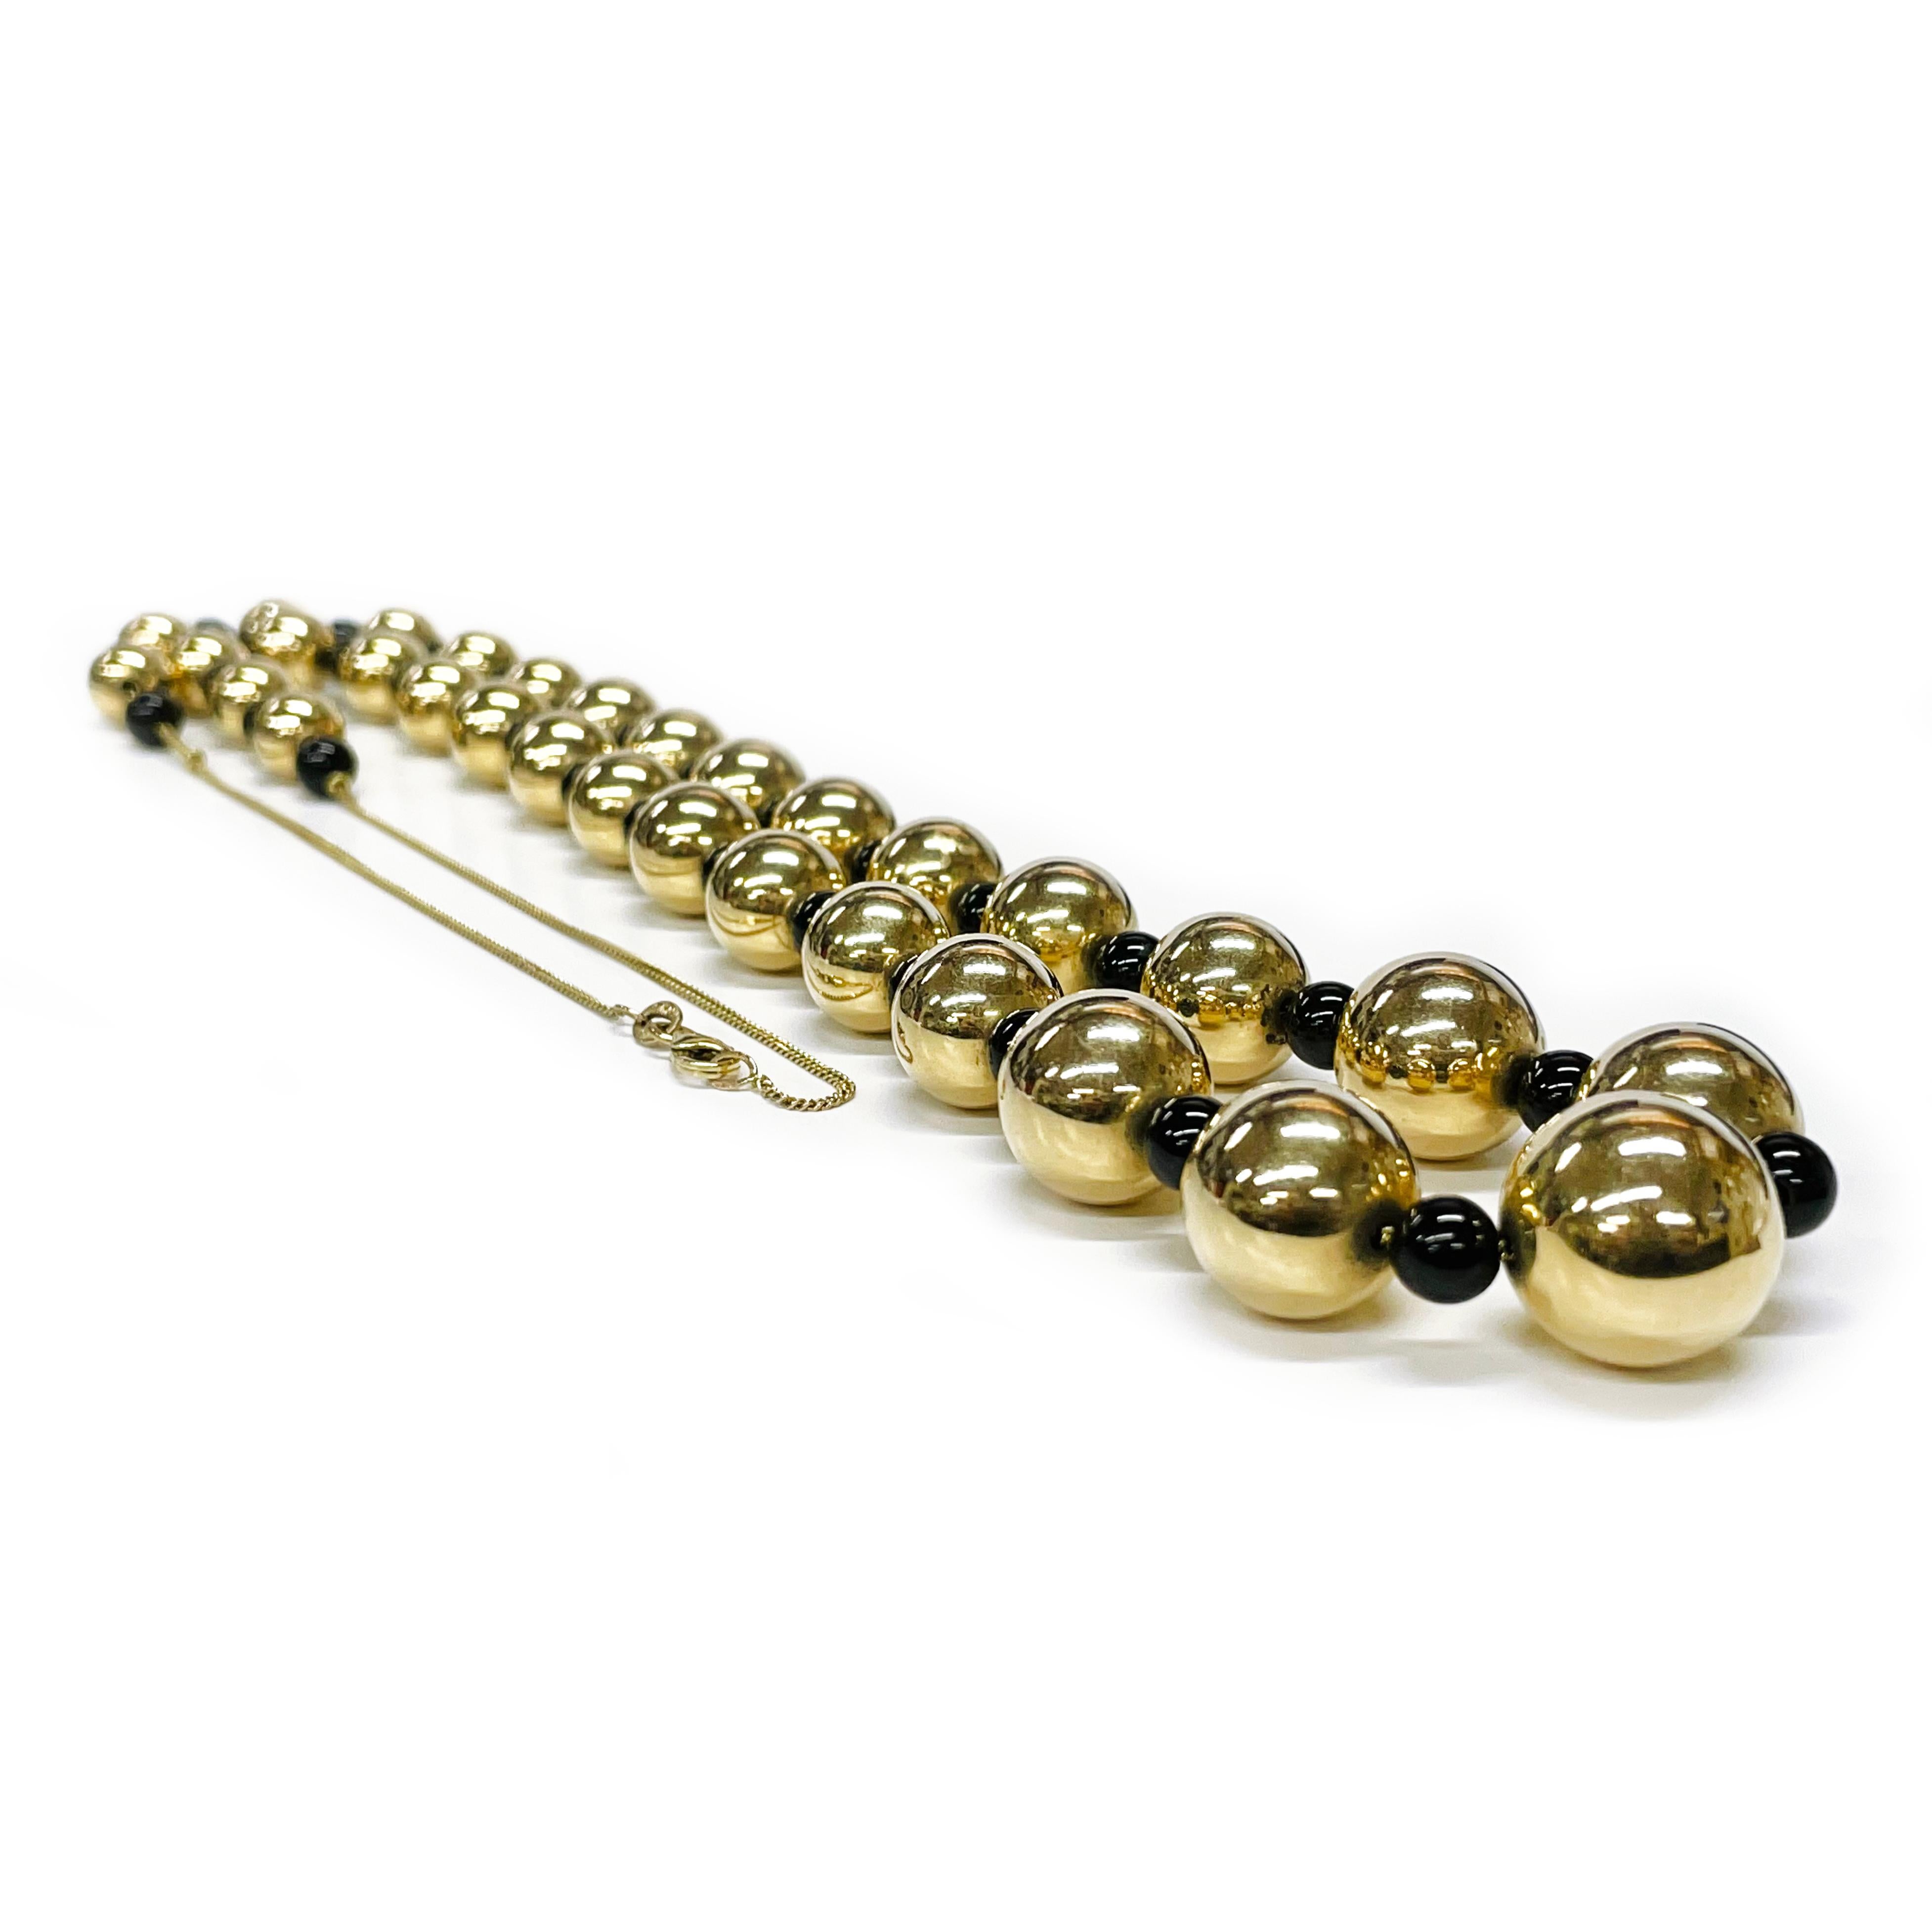 Collier en or jaune 14 carats et perles d'onyx. Le collier se compose d'un seul fil de perles rondes en or jaune de 9 à 15 mm et de 32 perles rondes en onyx de 6 mm. Trente et une perles d'or et trente-deux perles d'onyx sont montées sur une chaîne